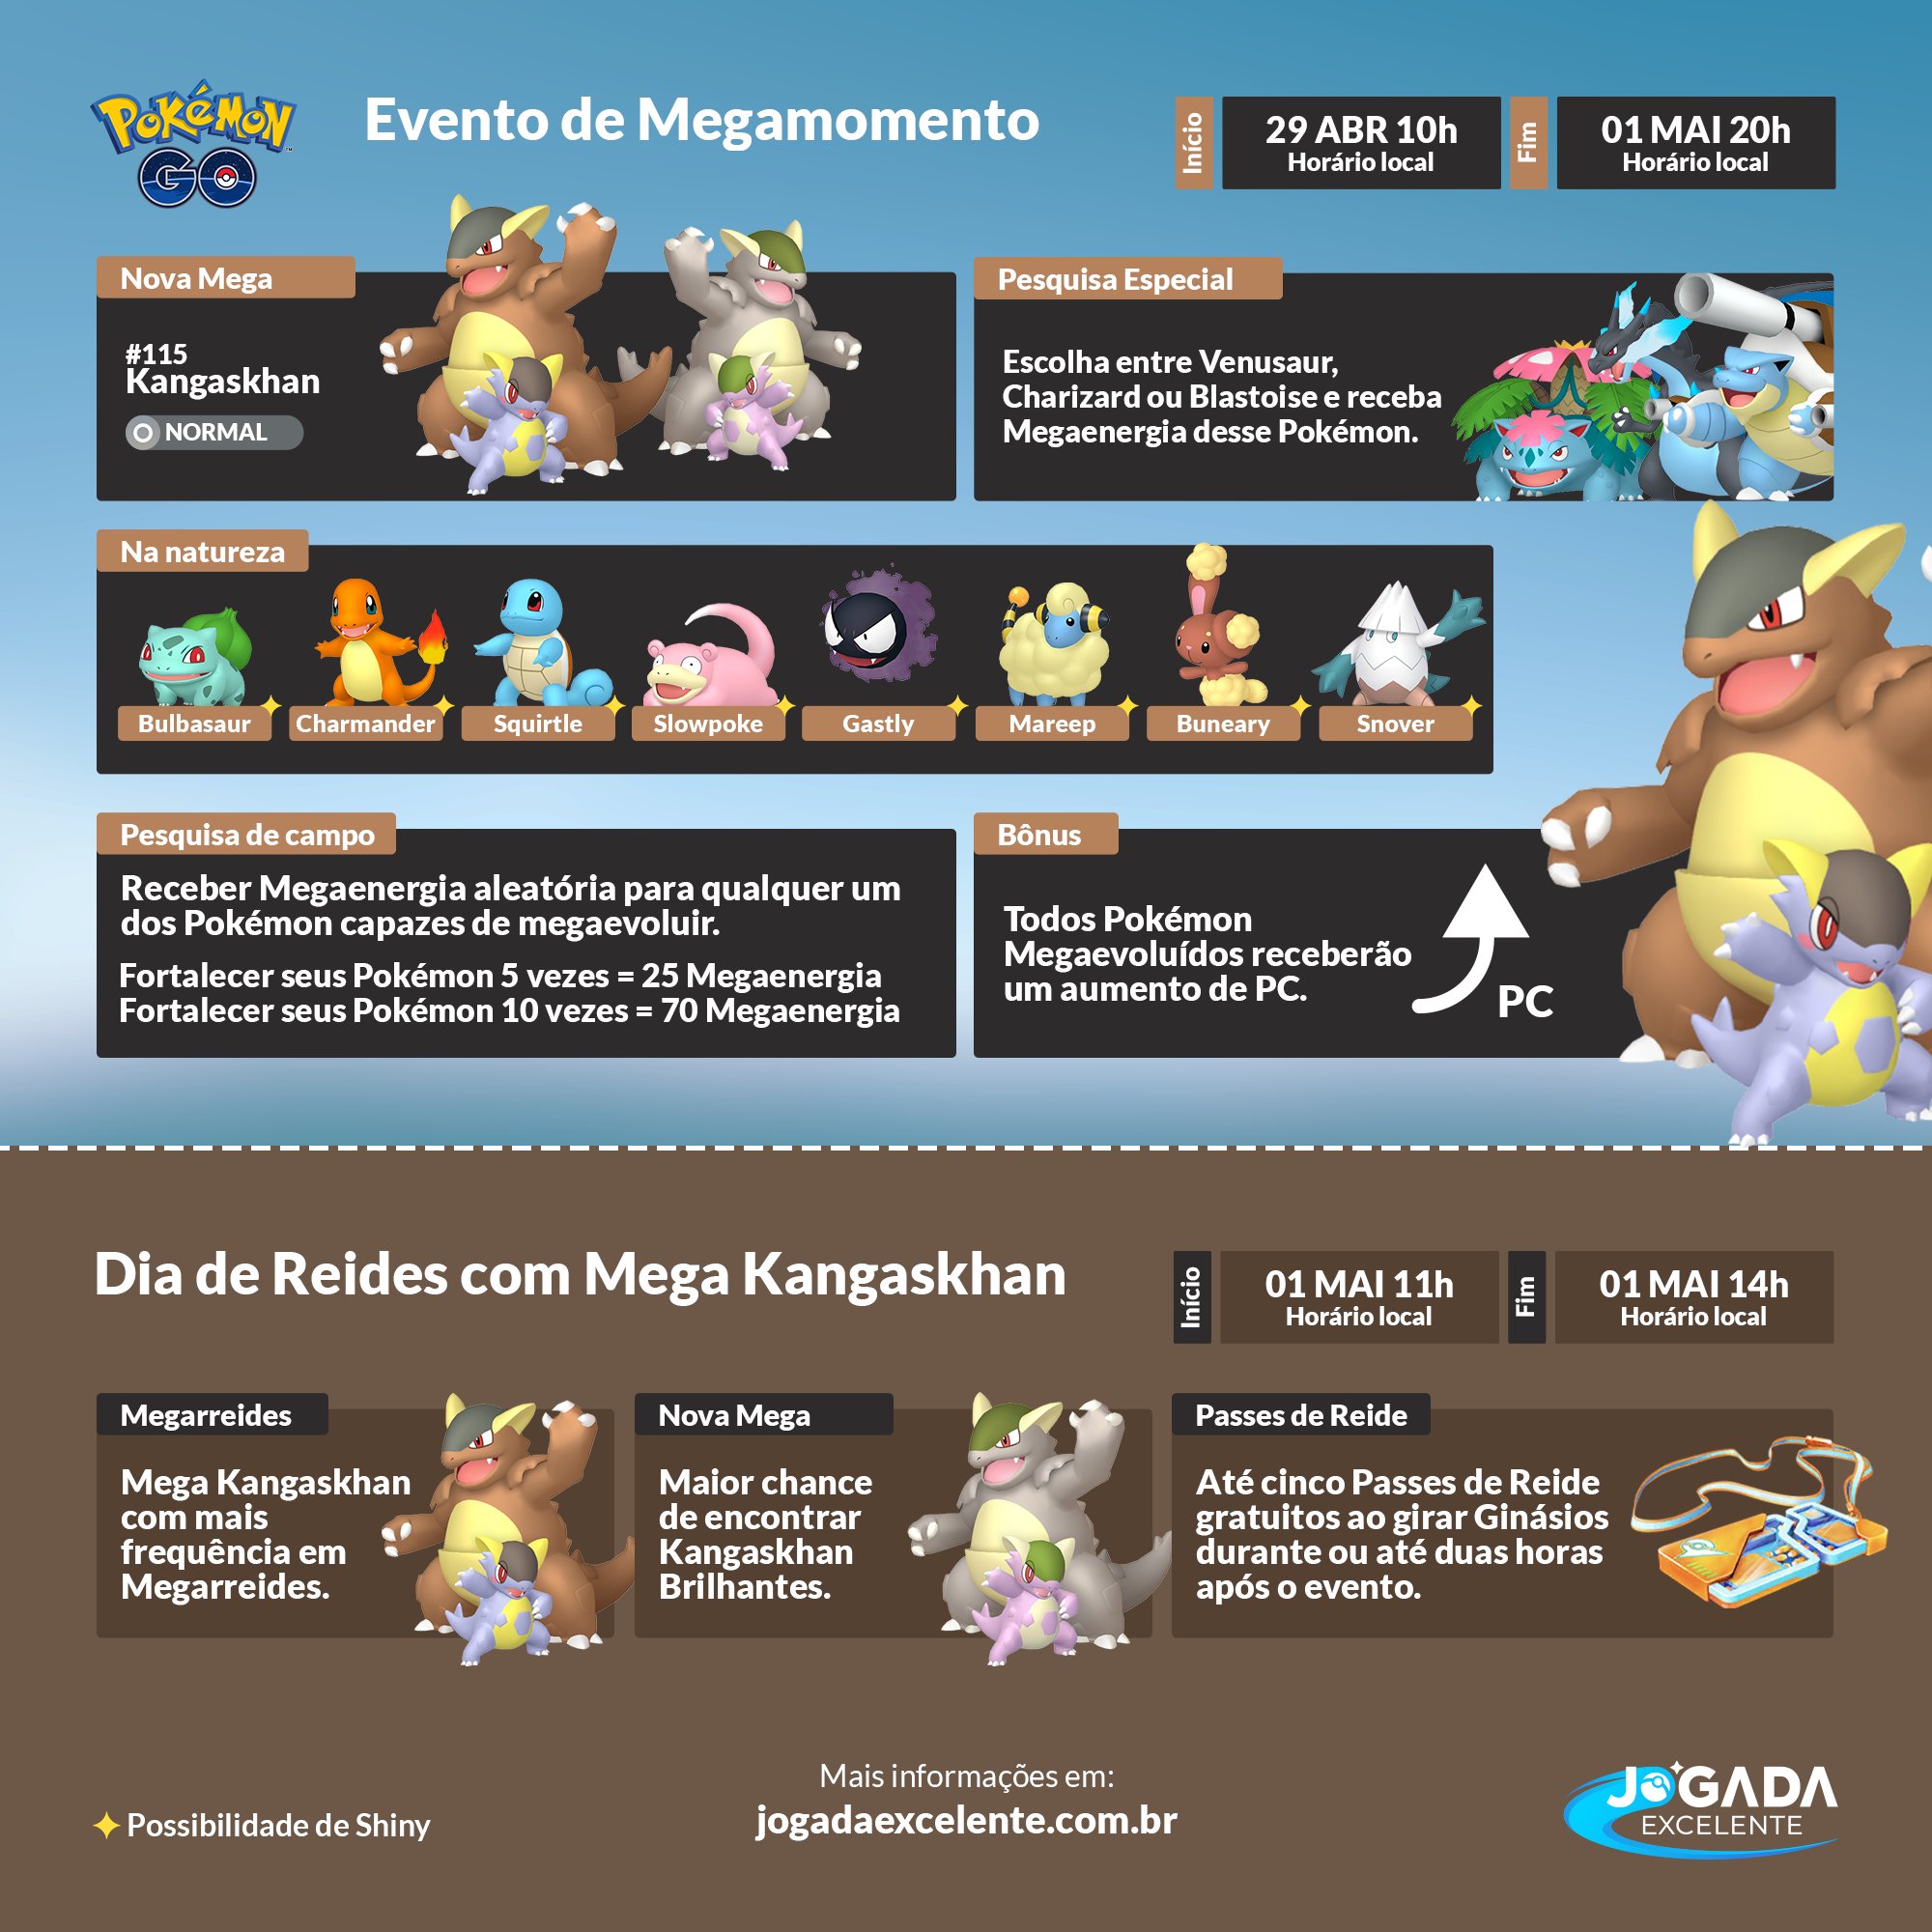 Jogada Excelente on X: Pokémon GO: Com a nova mecânica de Meganíveis,  Megarreides de Mega Kangaskhan também ficaram disponíveis no mundo inteiro.  Confira quais são os Pokémon recomendados para enfrentá-la e se